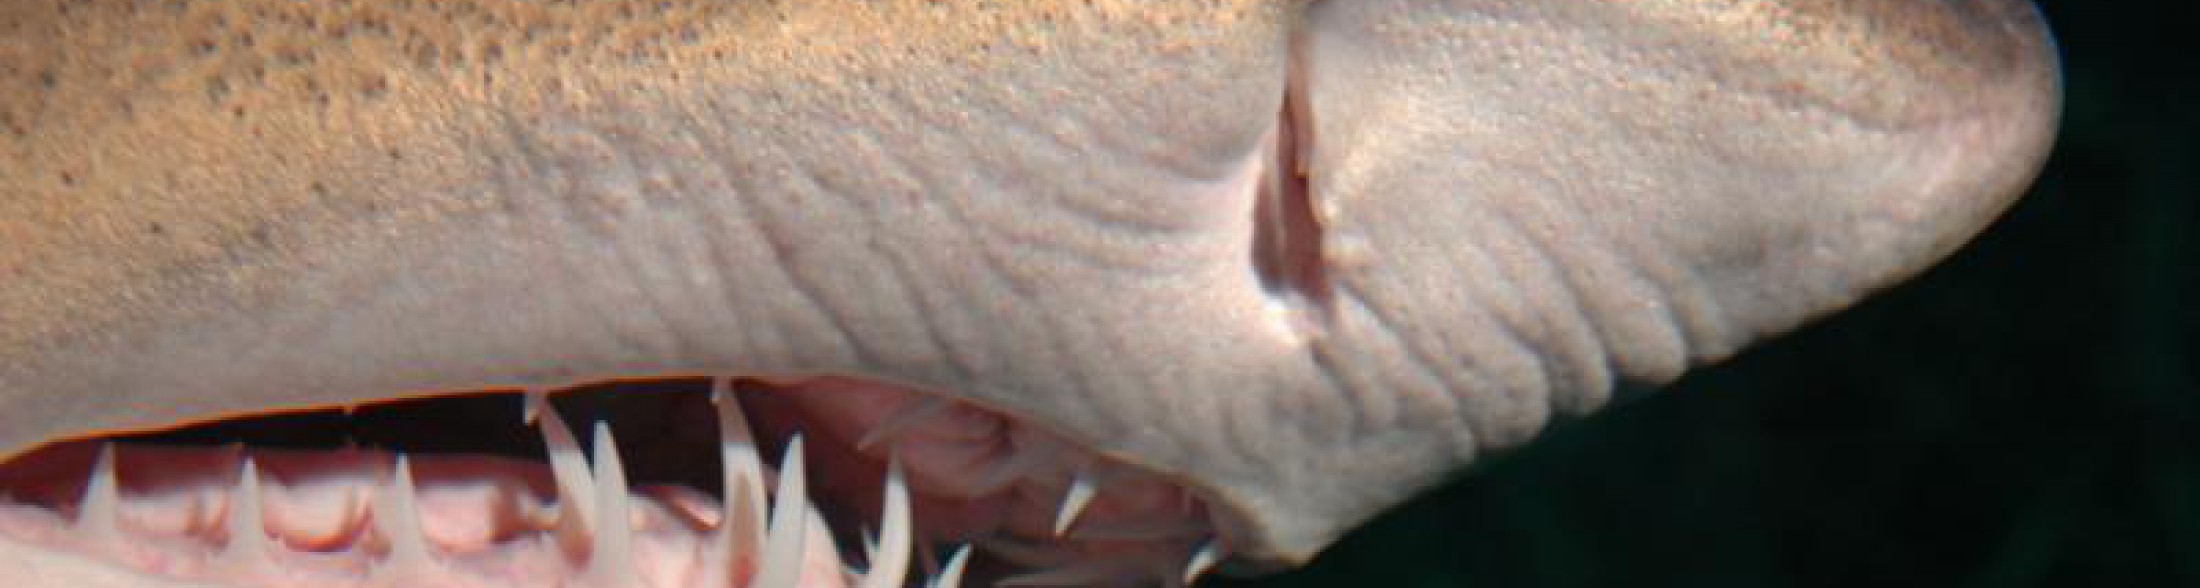 denti di squalo